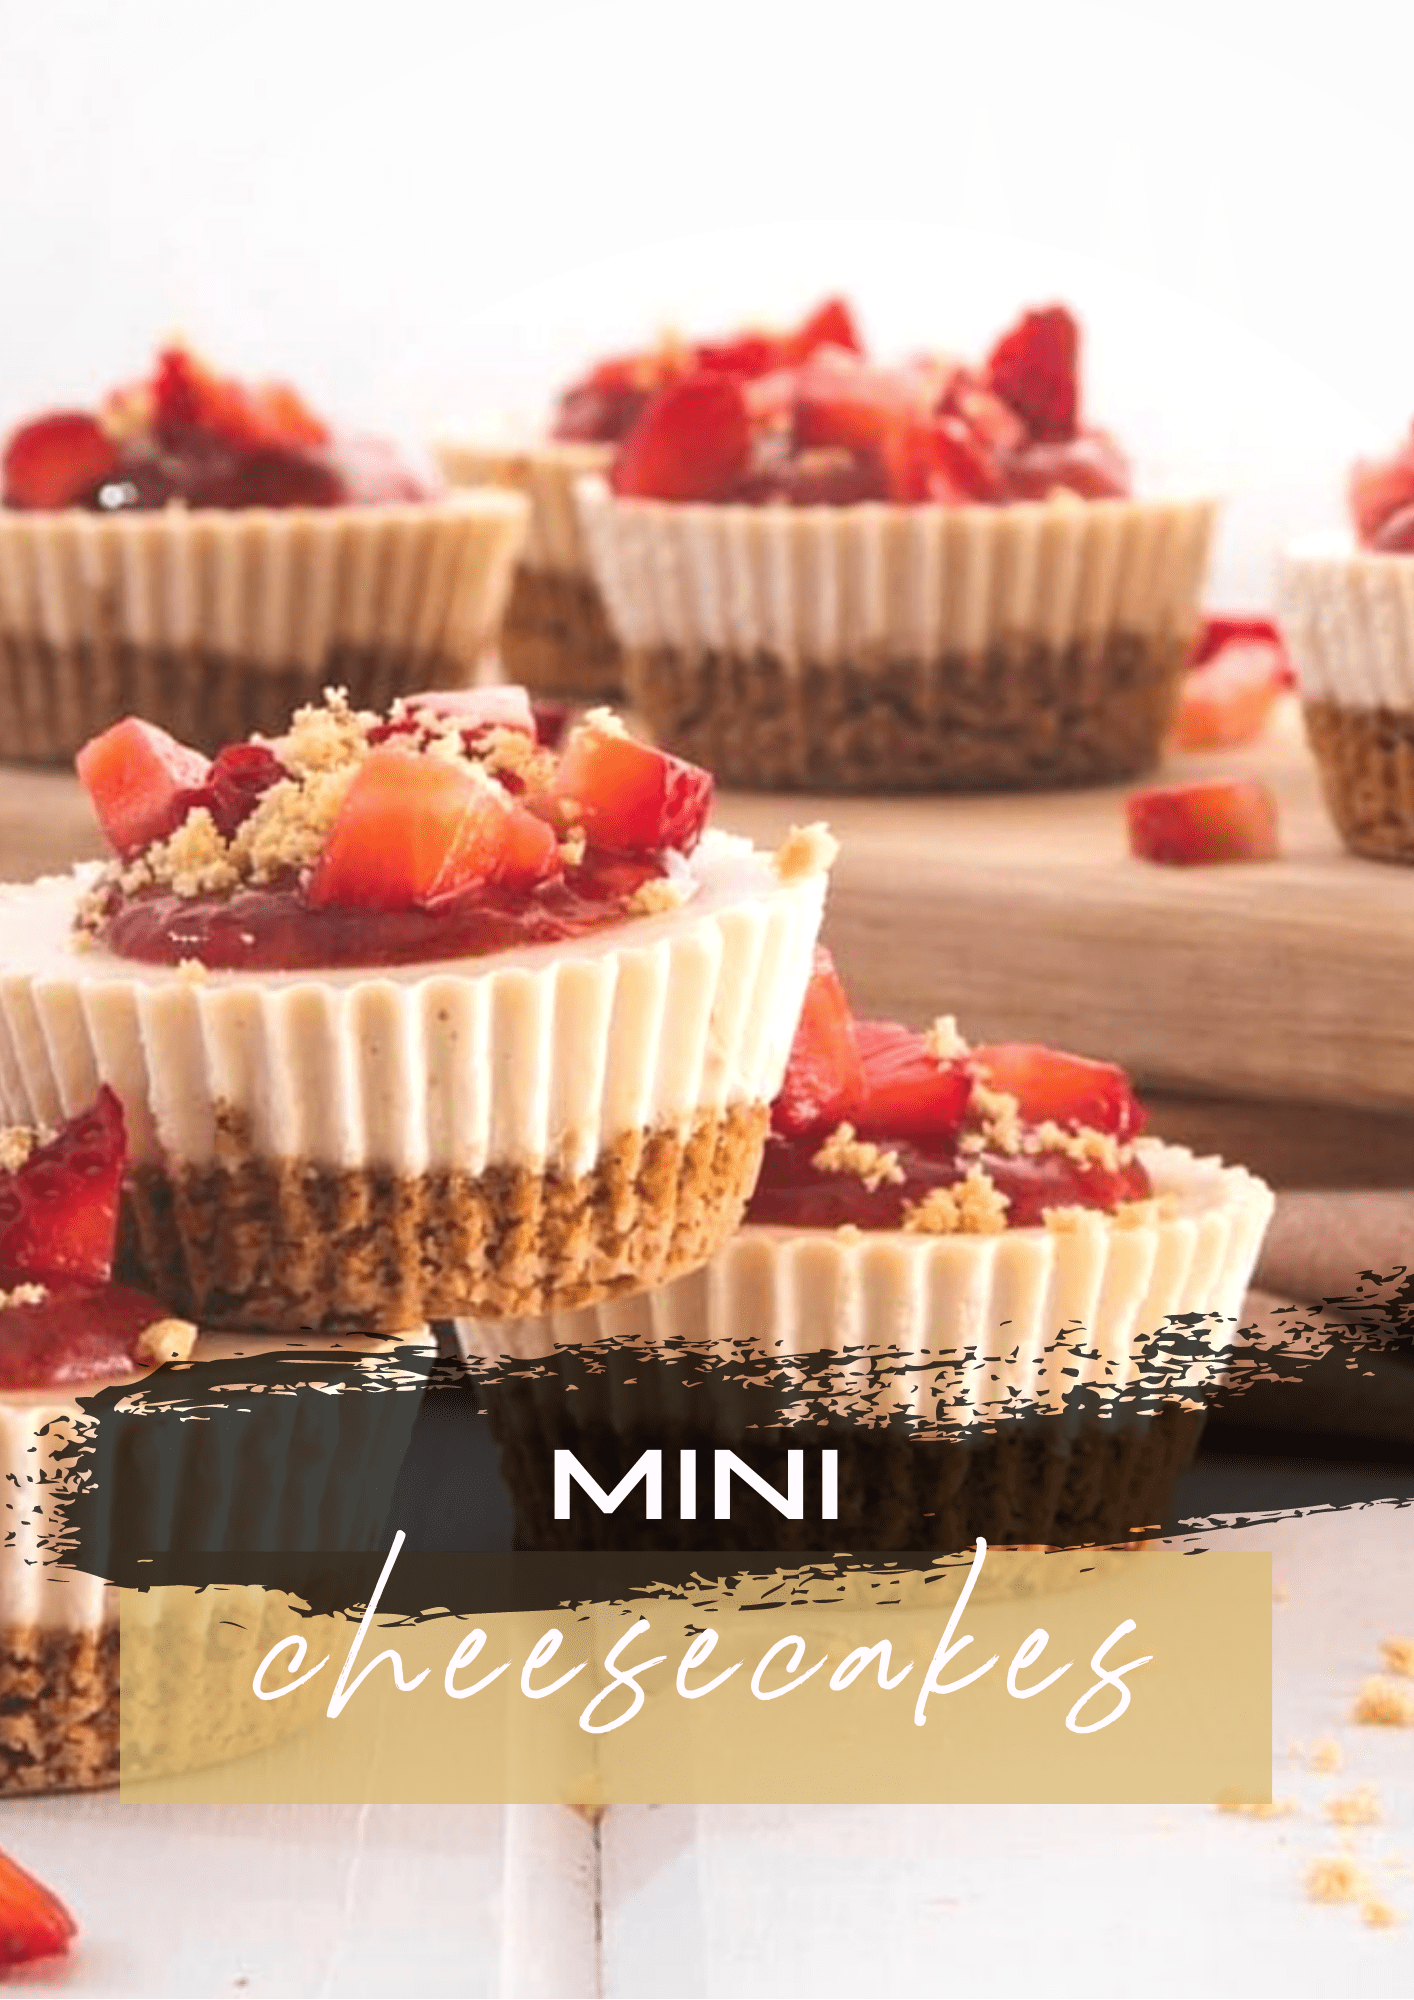 Mini cheesecakes